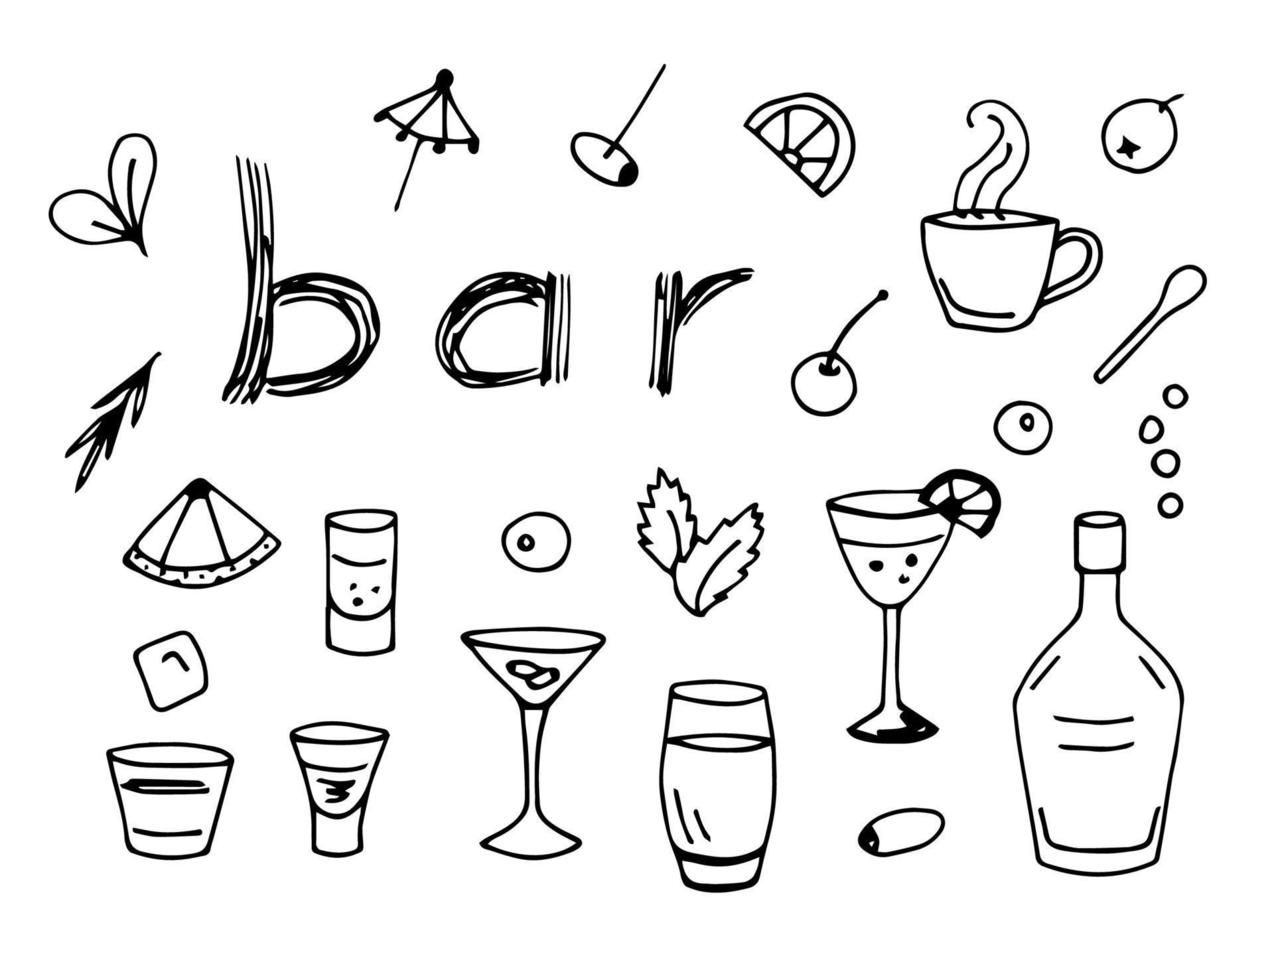 esboço de doodle de vetor simples desenhados à mão. conjunto de elementos de design para bar, garrafa, copo, bebida, coquetel, gelo com um contorno preto sobre fundo branco. café de verão, bebidas.